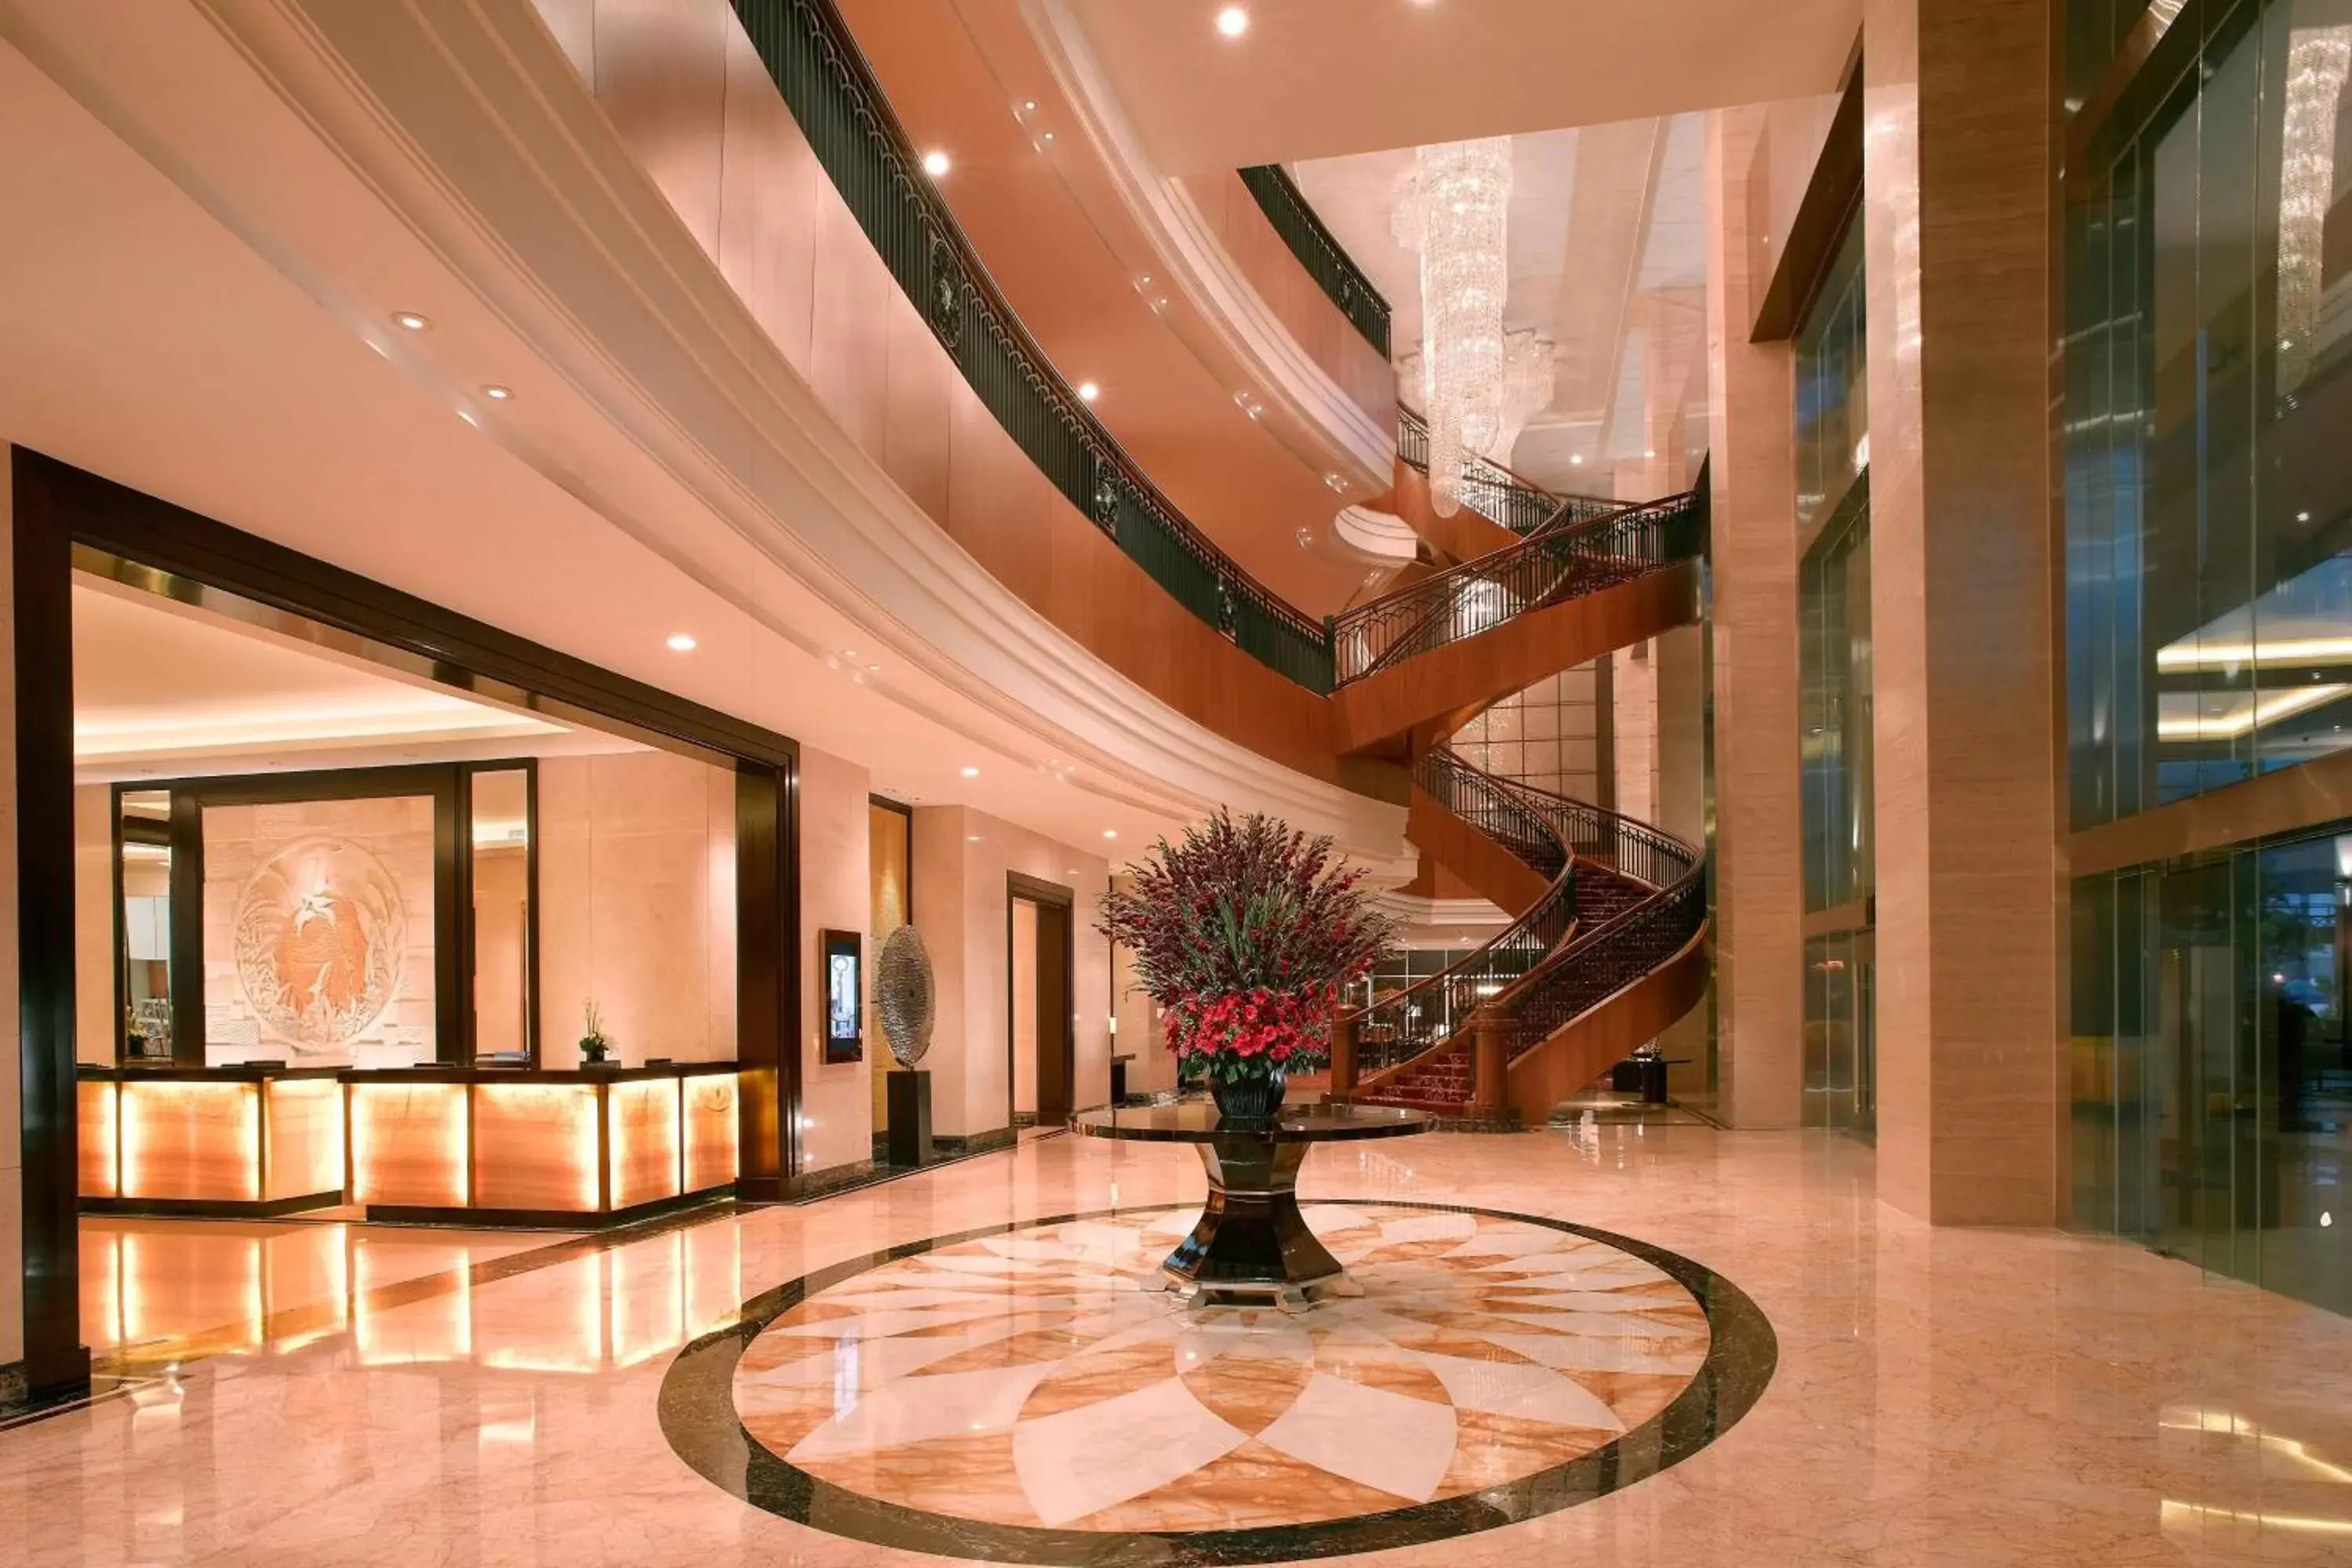 Lobby or reception, Lobby/Reception in JW Marriott Hotel Medan